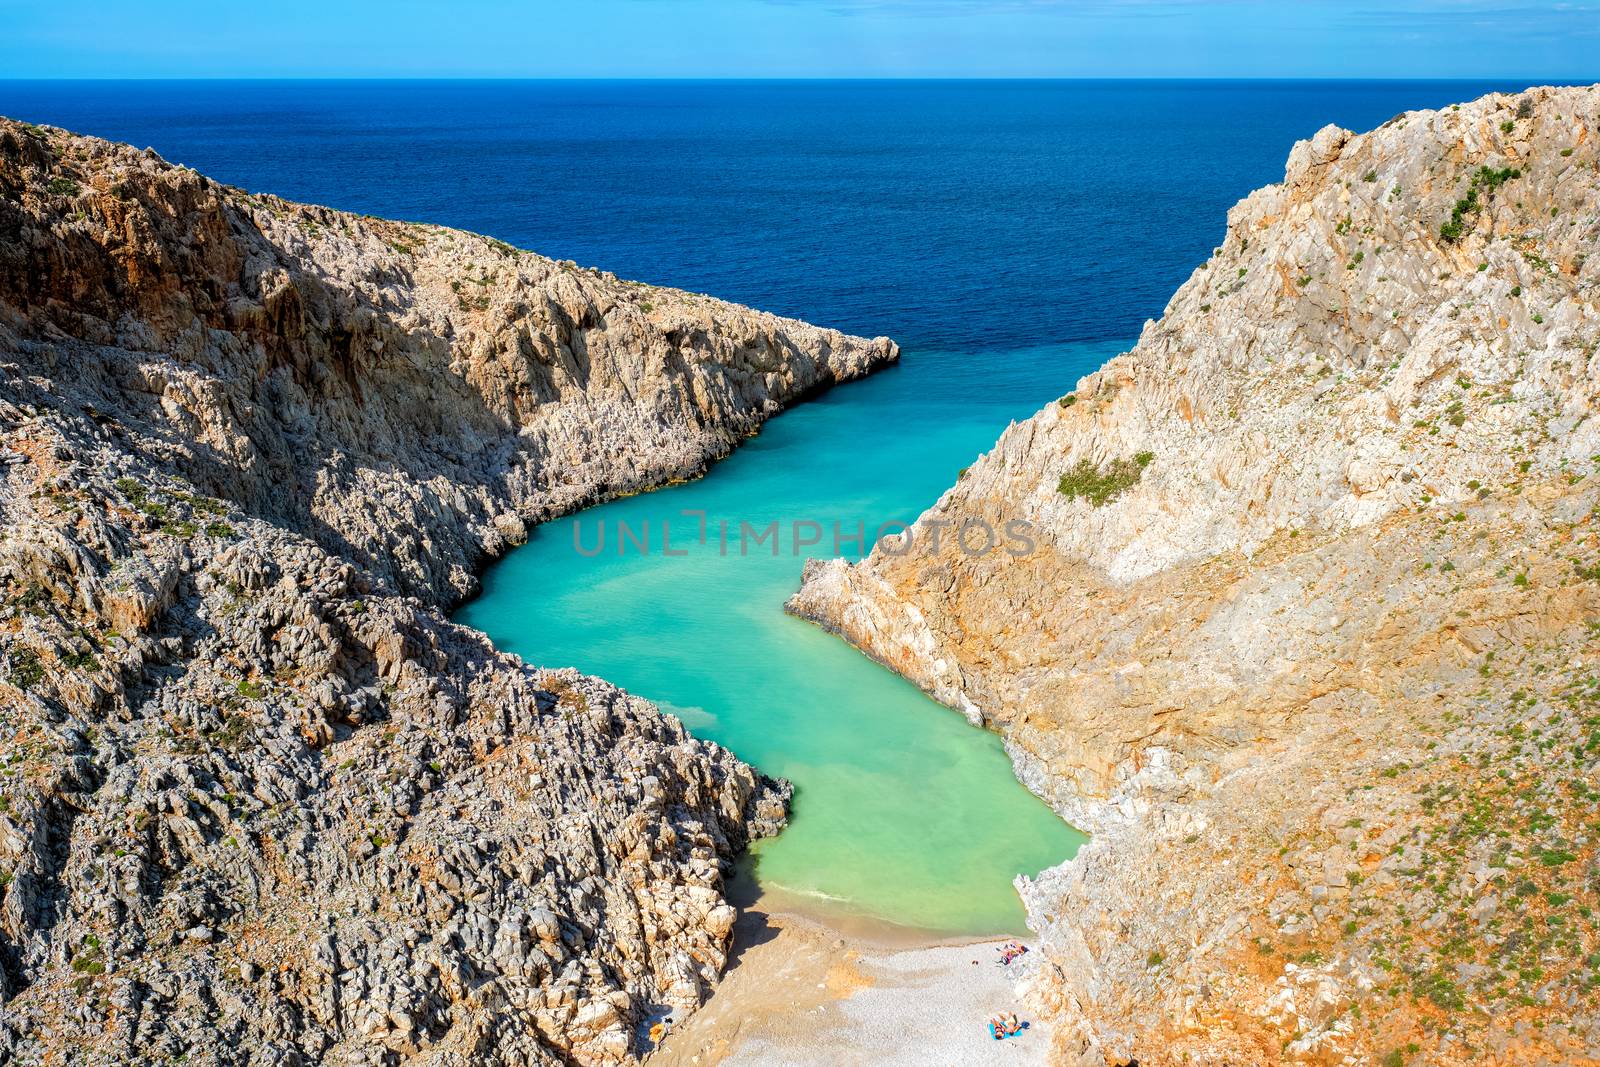 Seitan Limania beach on Crete, Greece by dimol